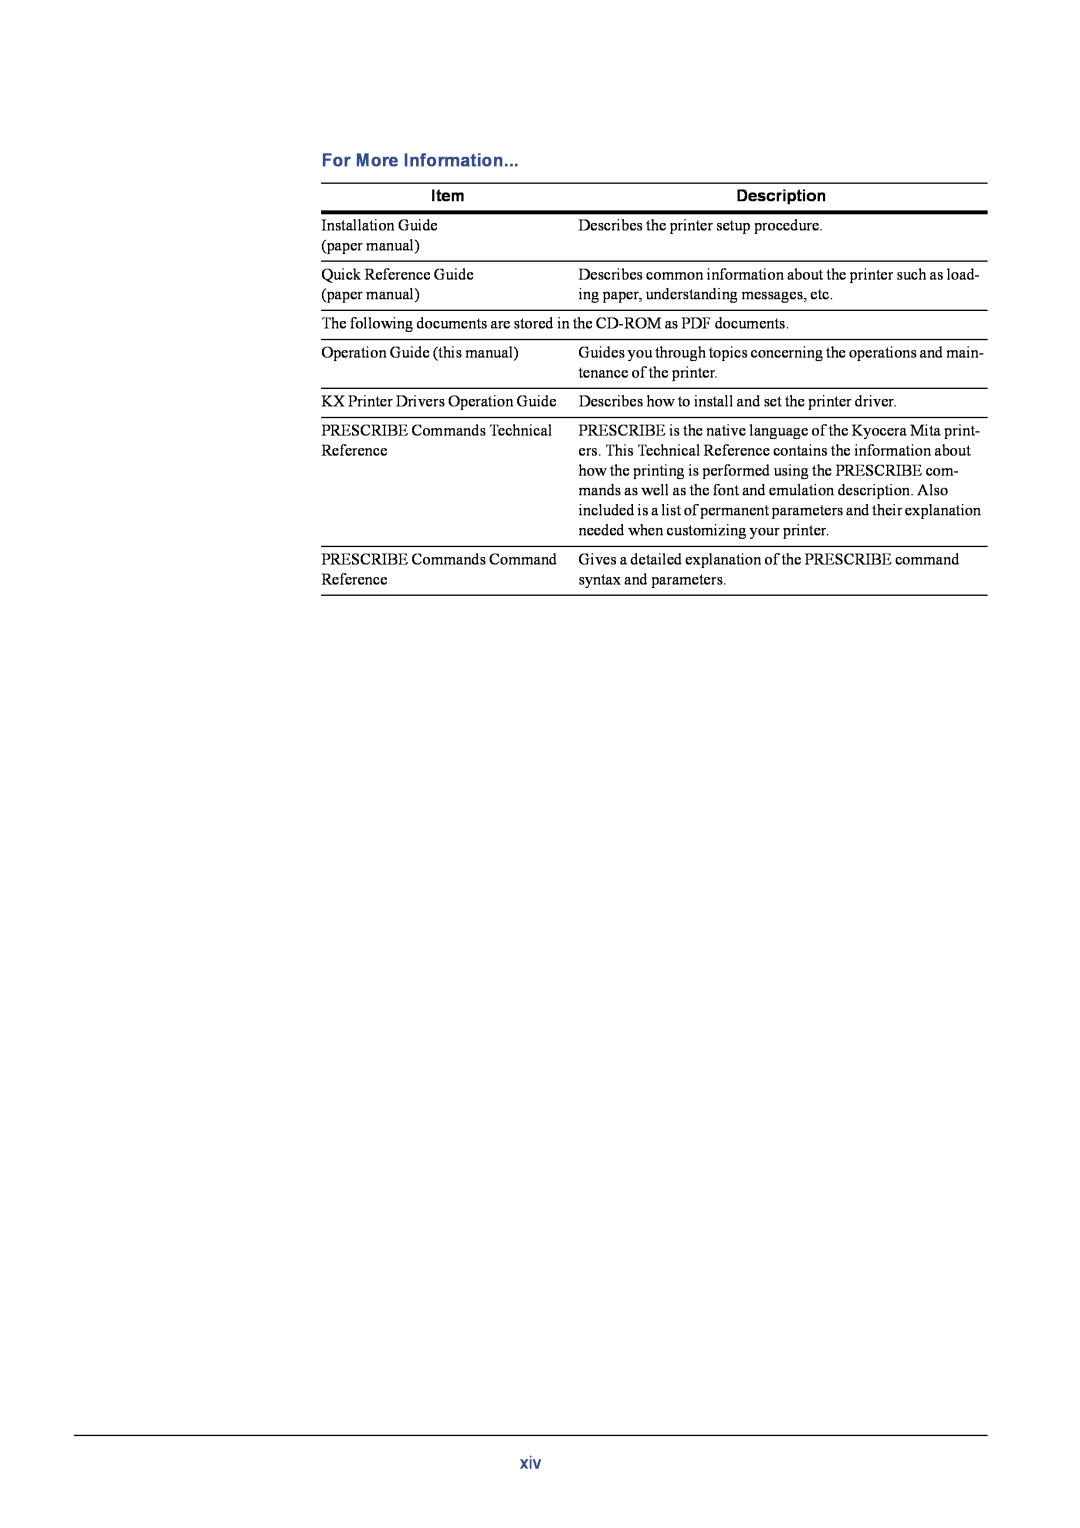 Kyocera C8026N manual For More Information, Description 